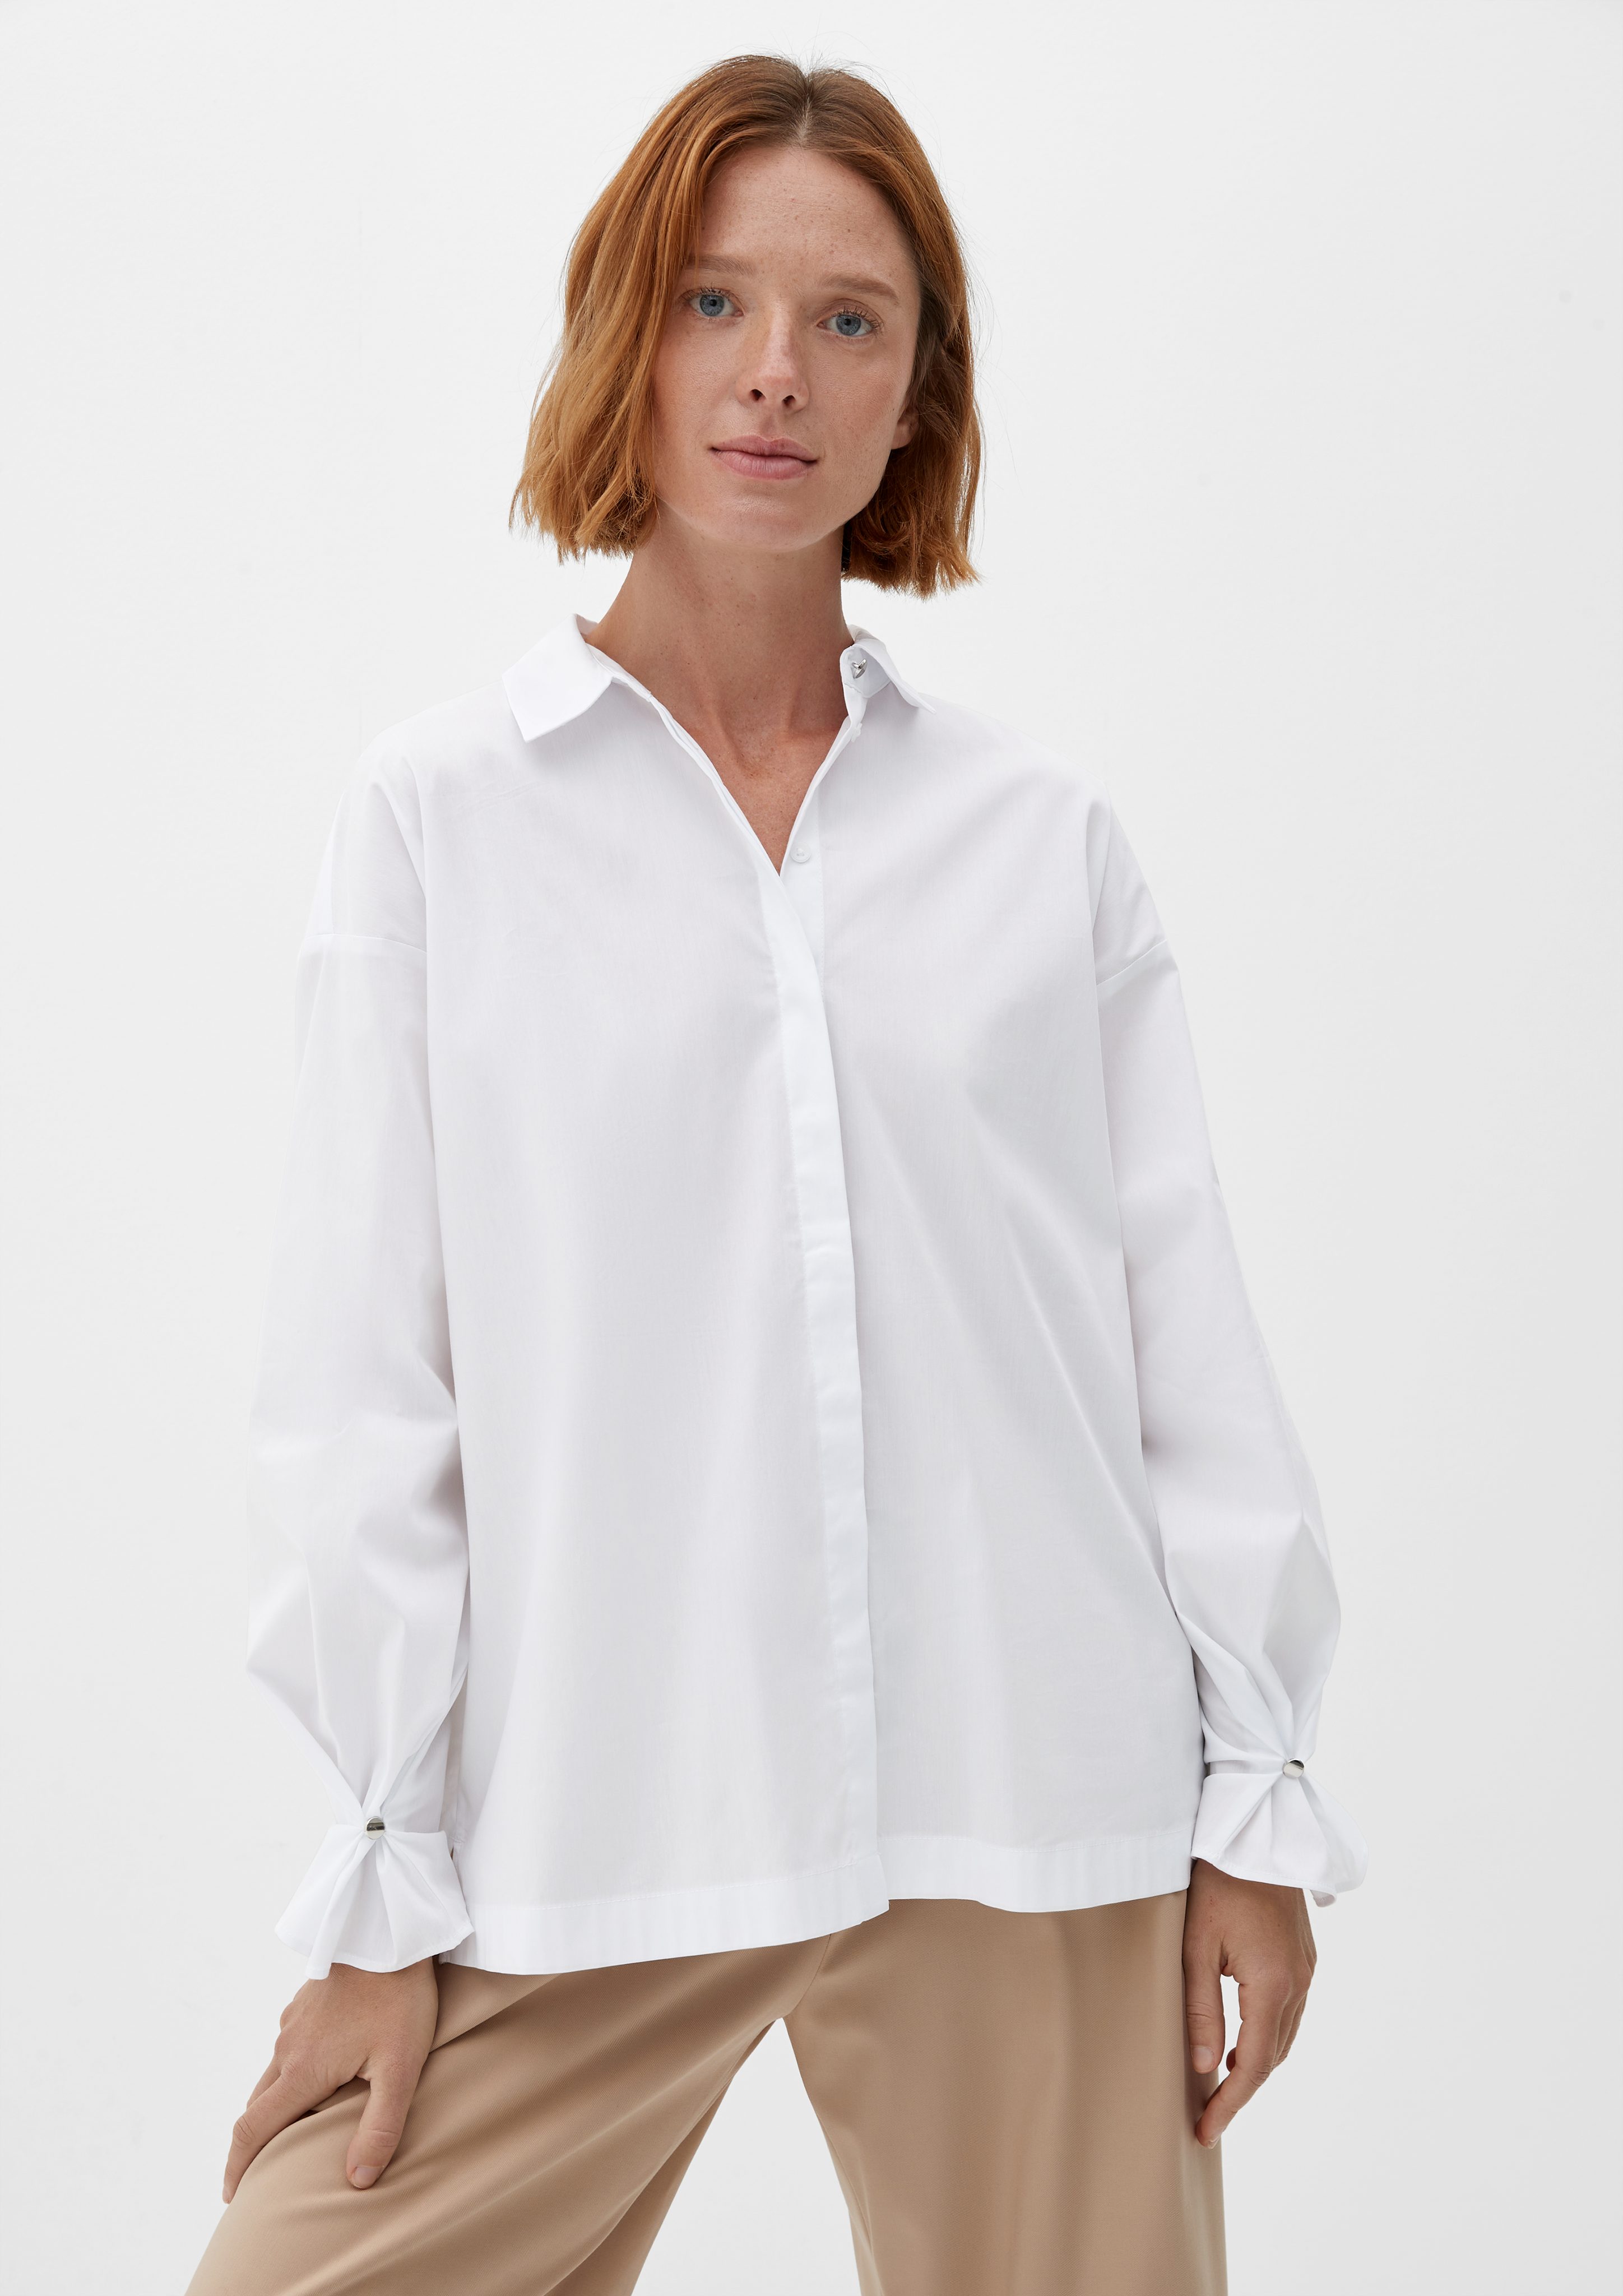 Blusen für online Damen s.Oliver Weiße | OTTO kaufen